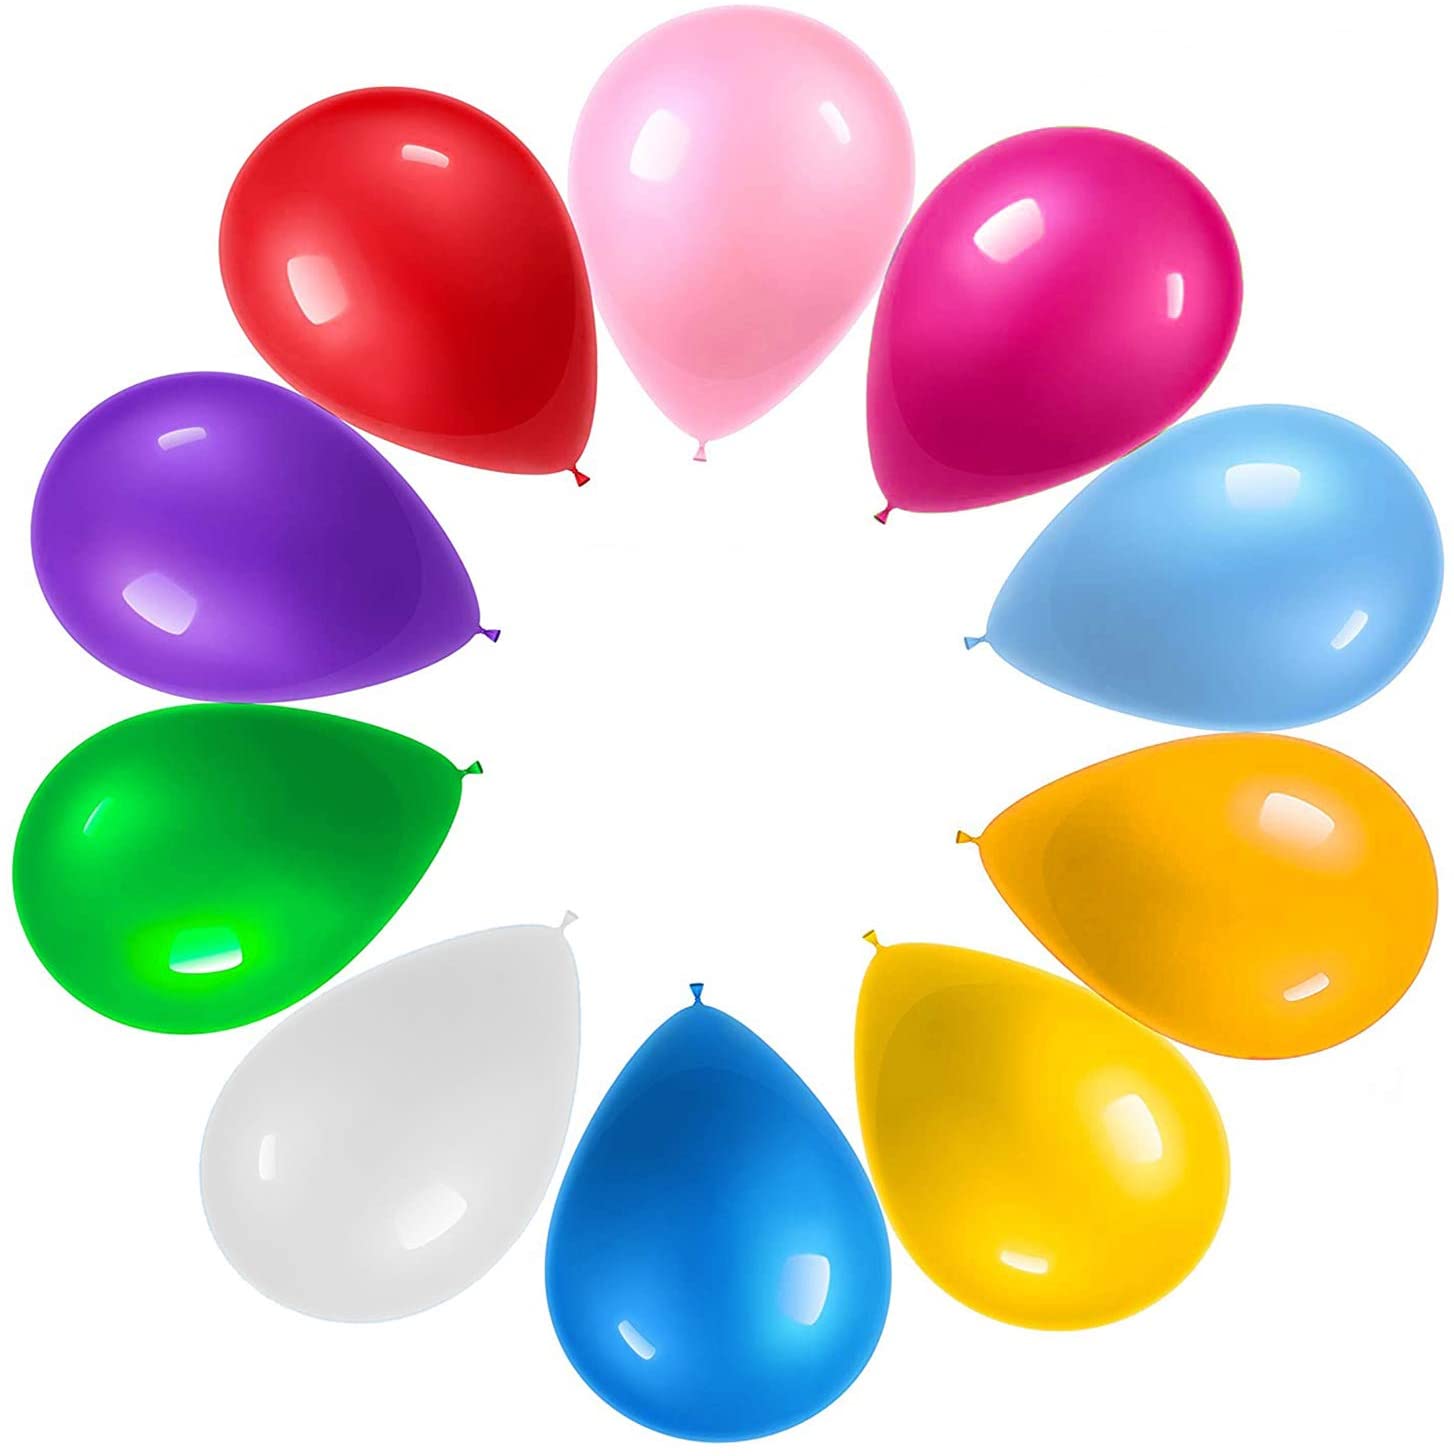 Ballons de baudruche Welcome Family 25 cm